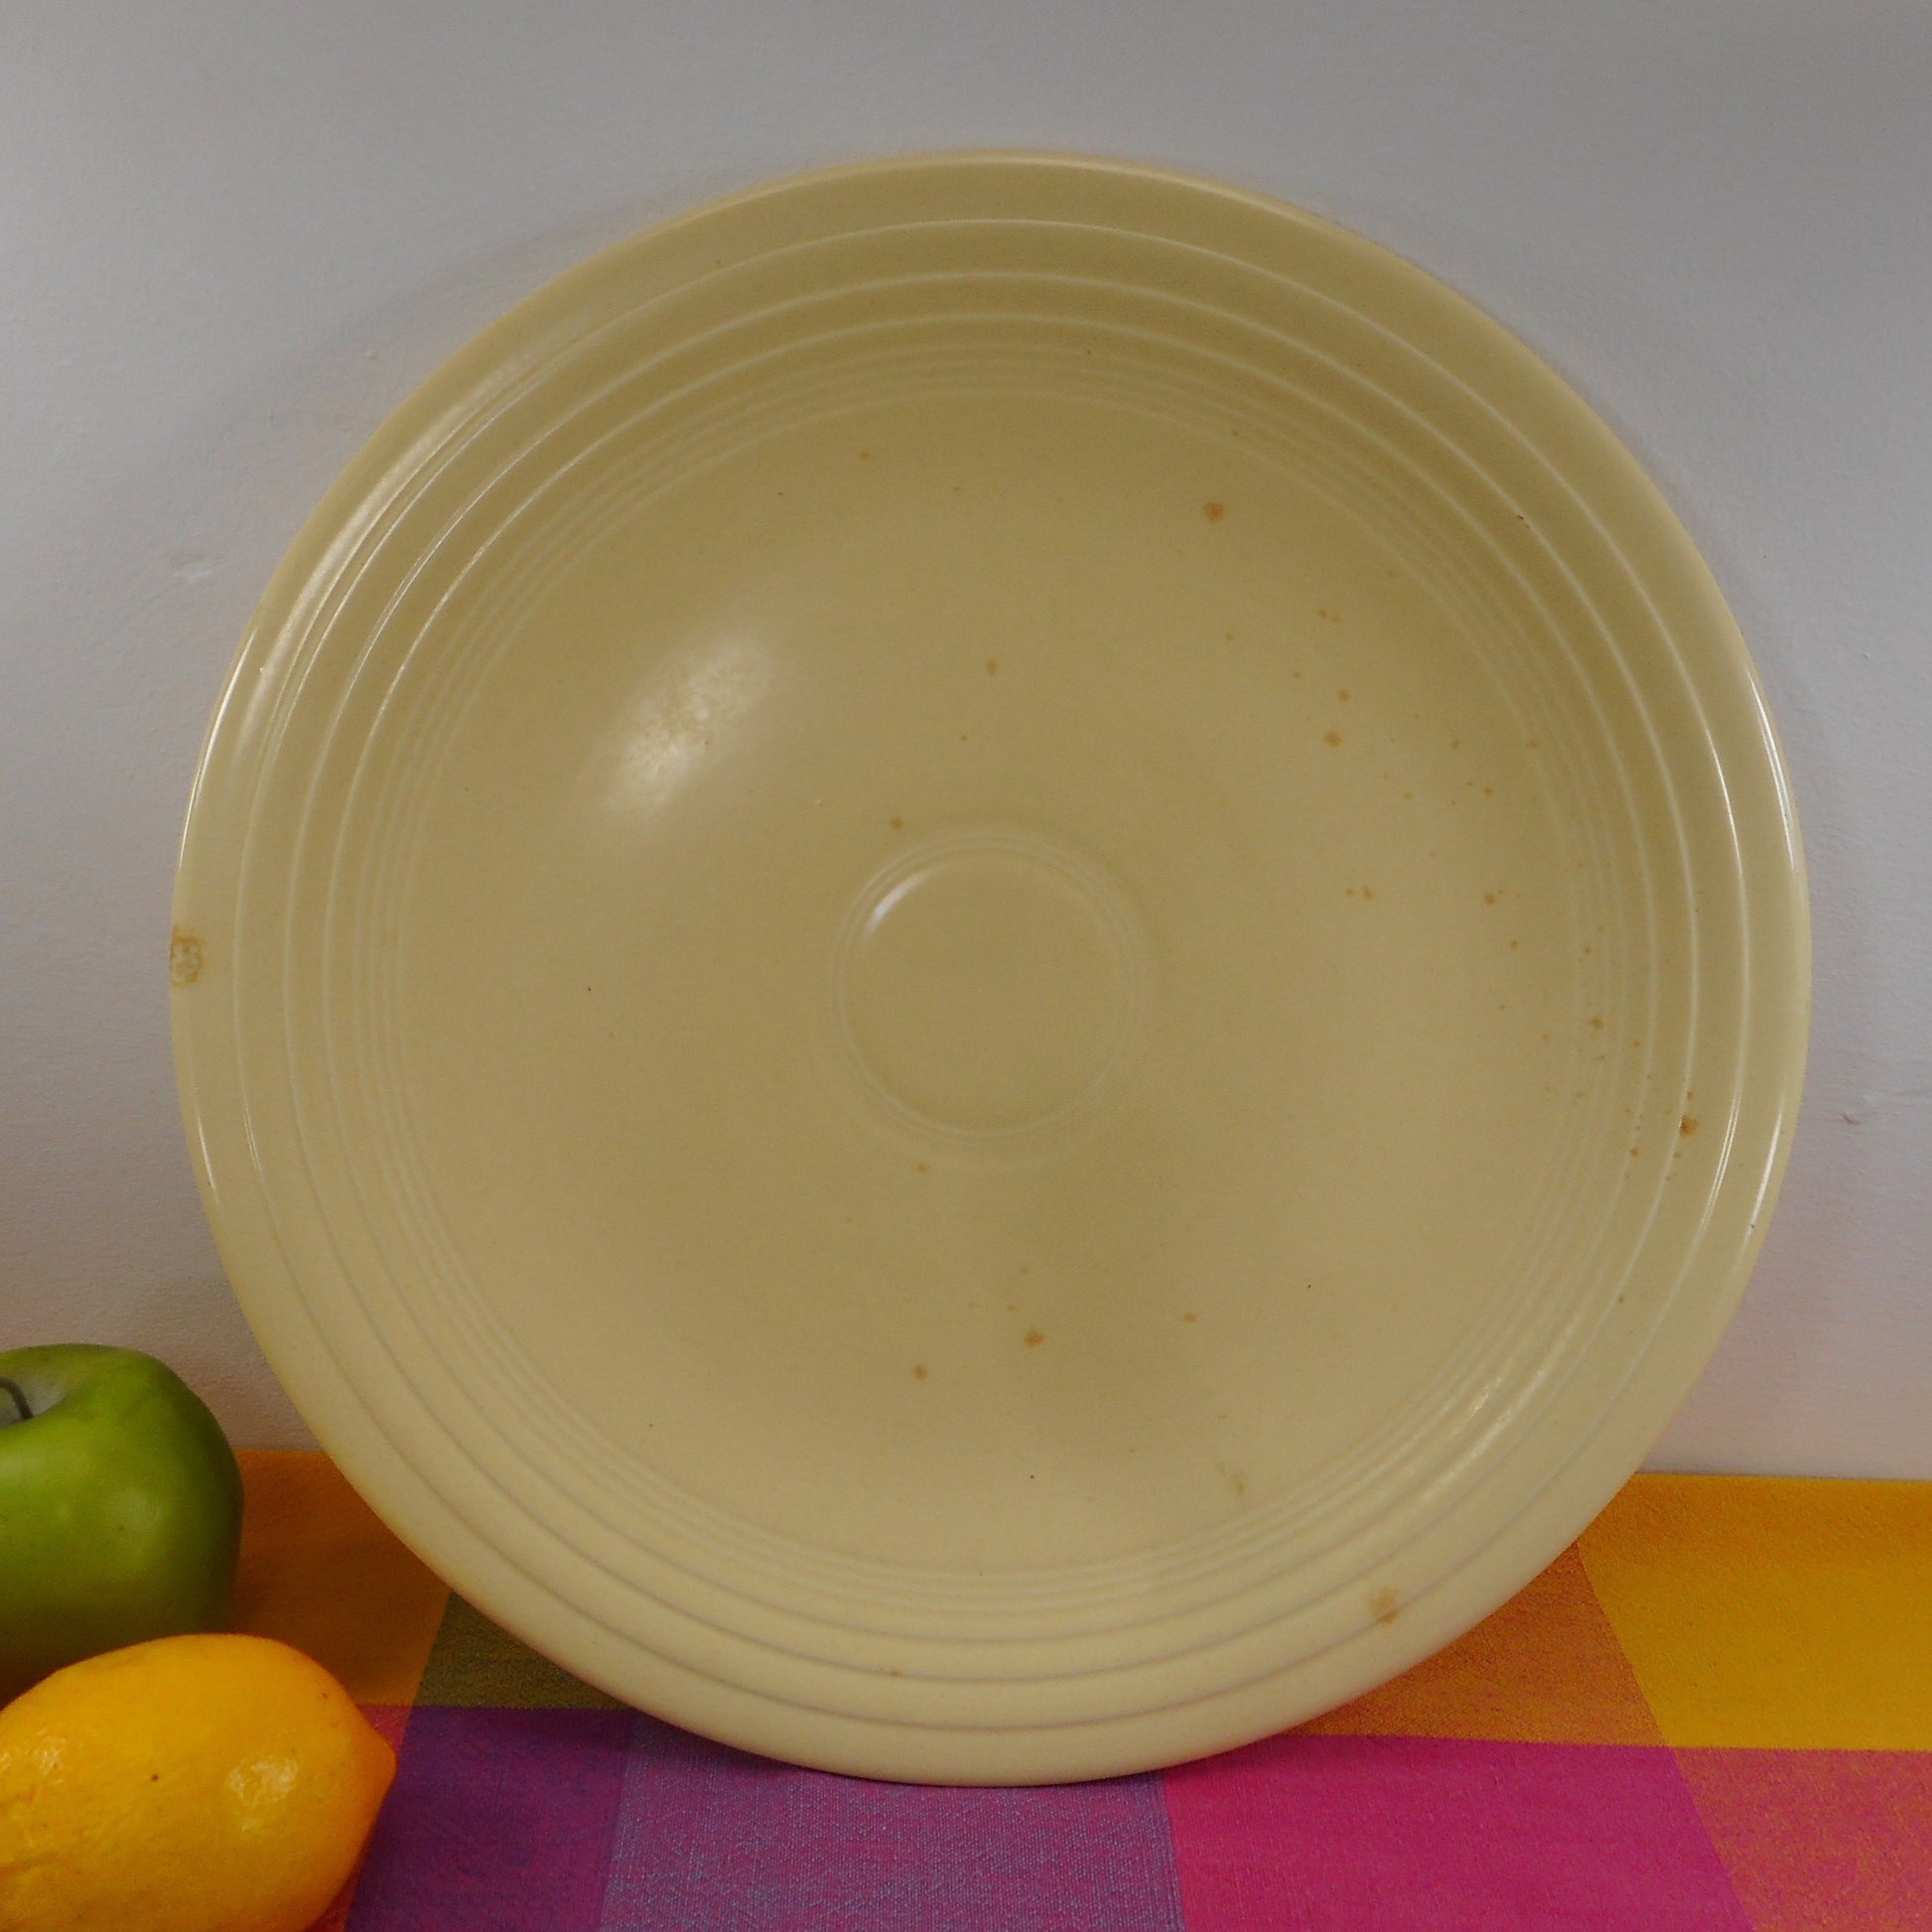 Fiestaware Genuine Vintage 14" Chop Plate Round Platter - Ivory with Orange Splatter Factory Splotch